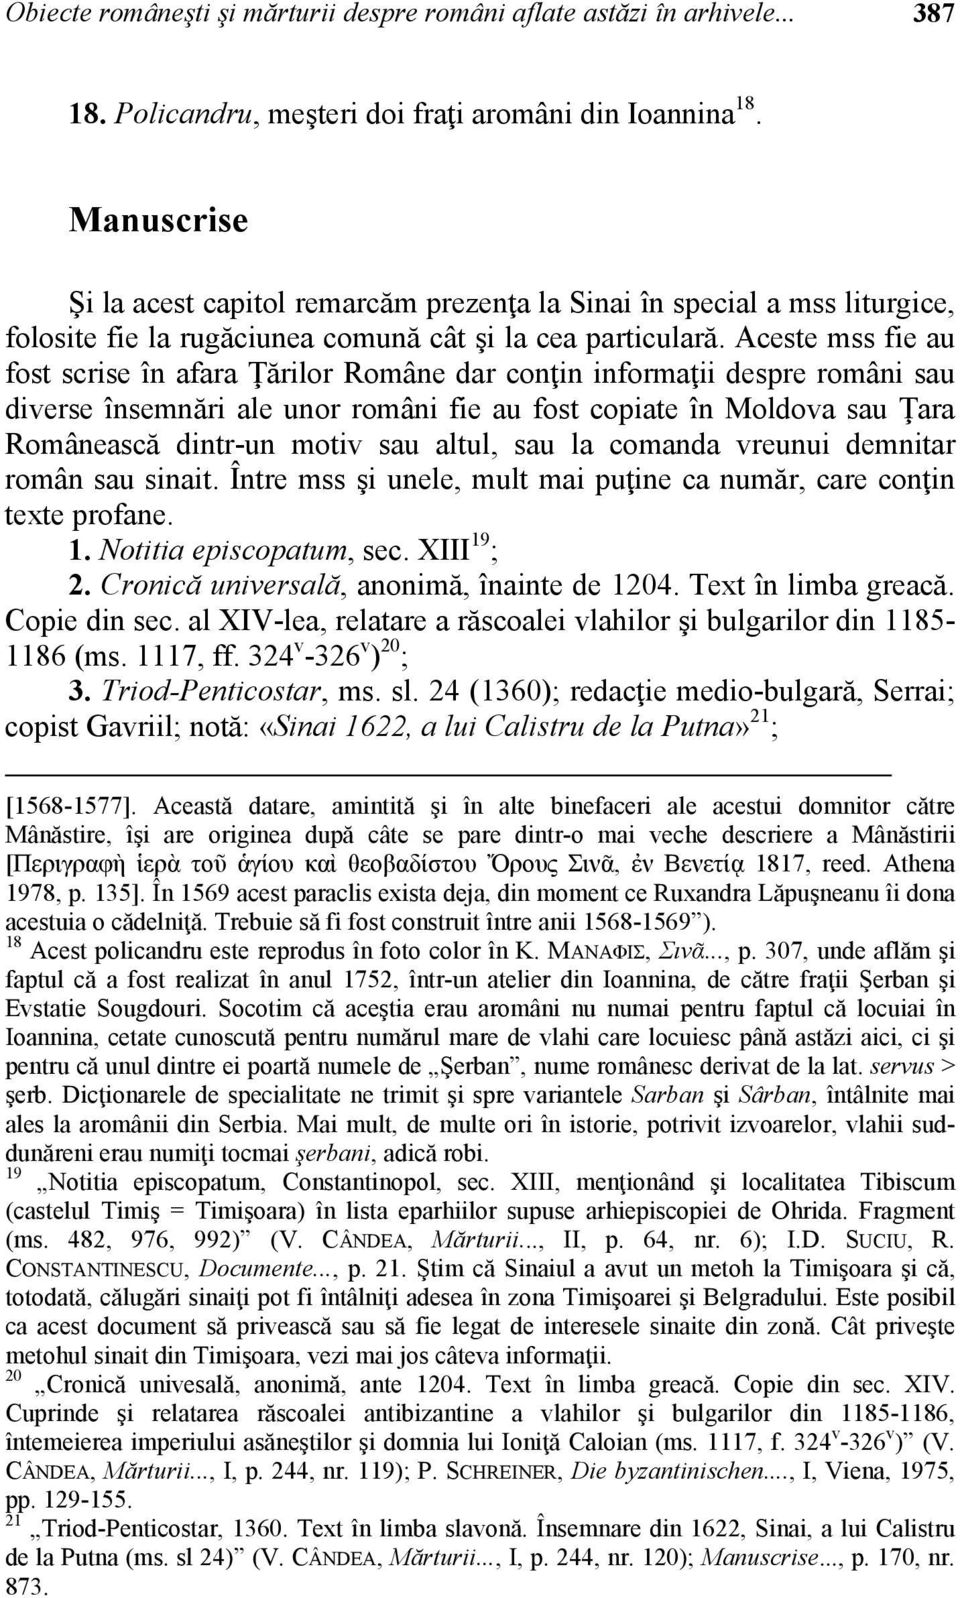 Aceste mss fie au fost scrise în afara Ţărilor Române dar conţin informaţii despre români sau diverse însemnări ale unor români fie au fost copiate în Moldova sau Ţara Românească dintr-un motiv sau